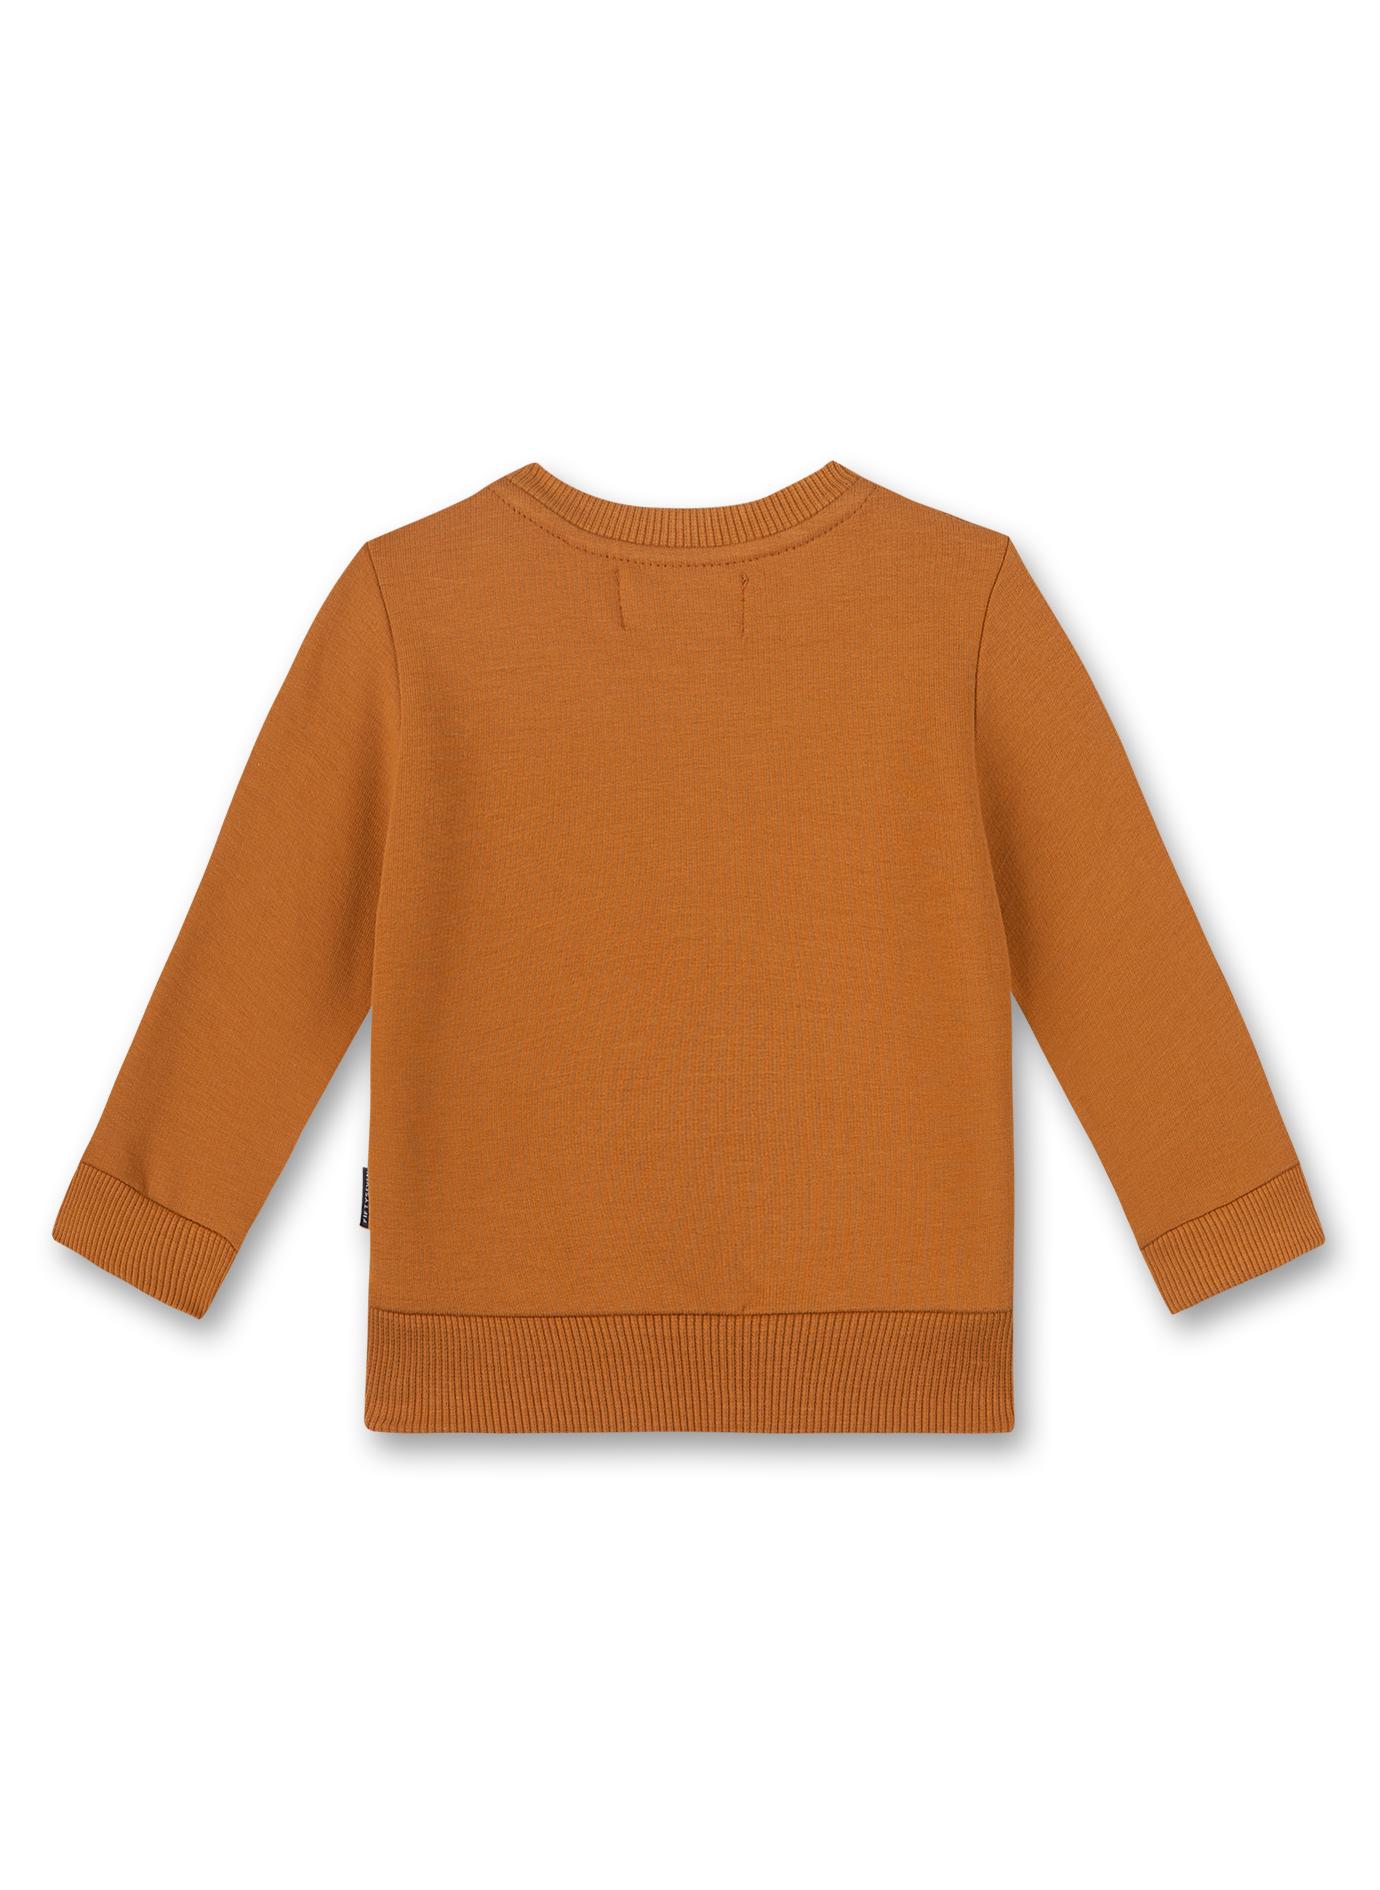 Jungen-Sweatshirt Braun Clever Fox